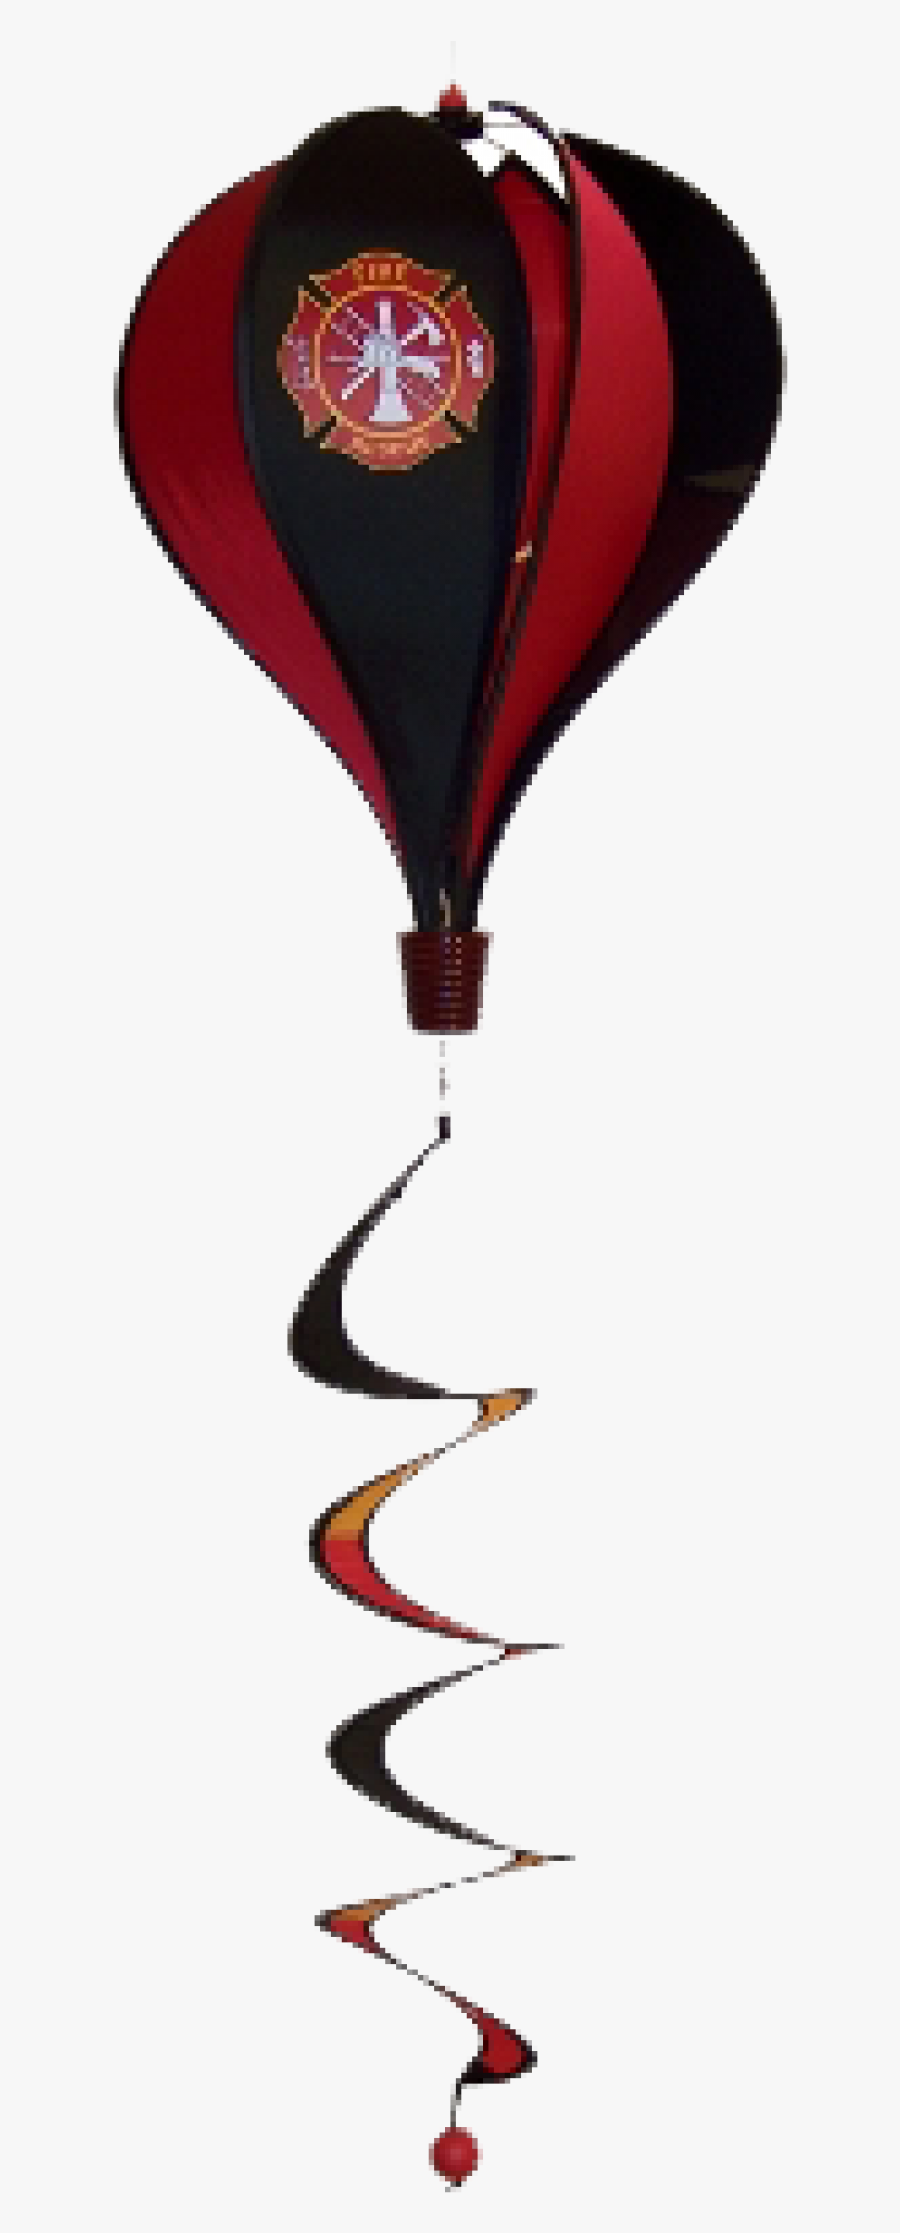 Image Of Hot Air Balloon Twist - Hot Air Balloon, Transparent Clipart